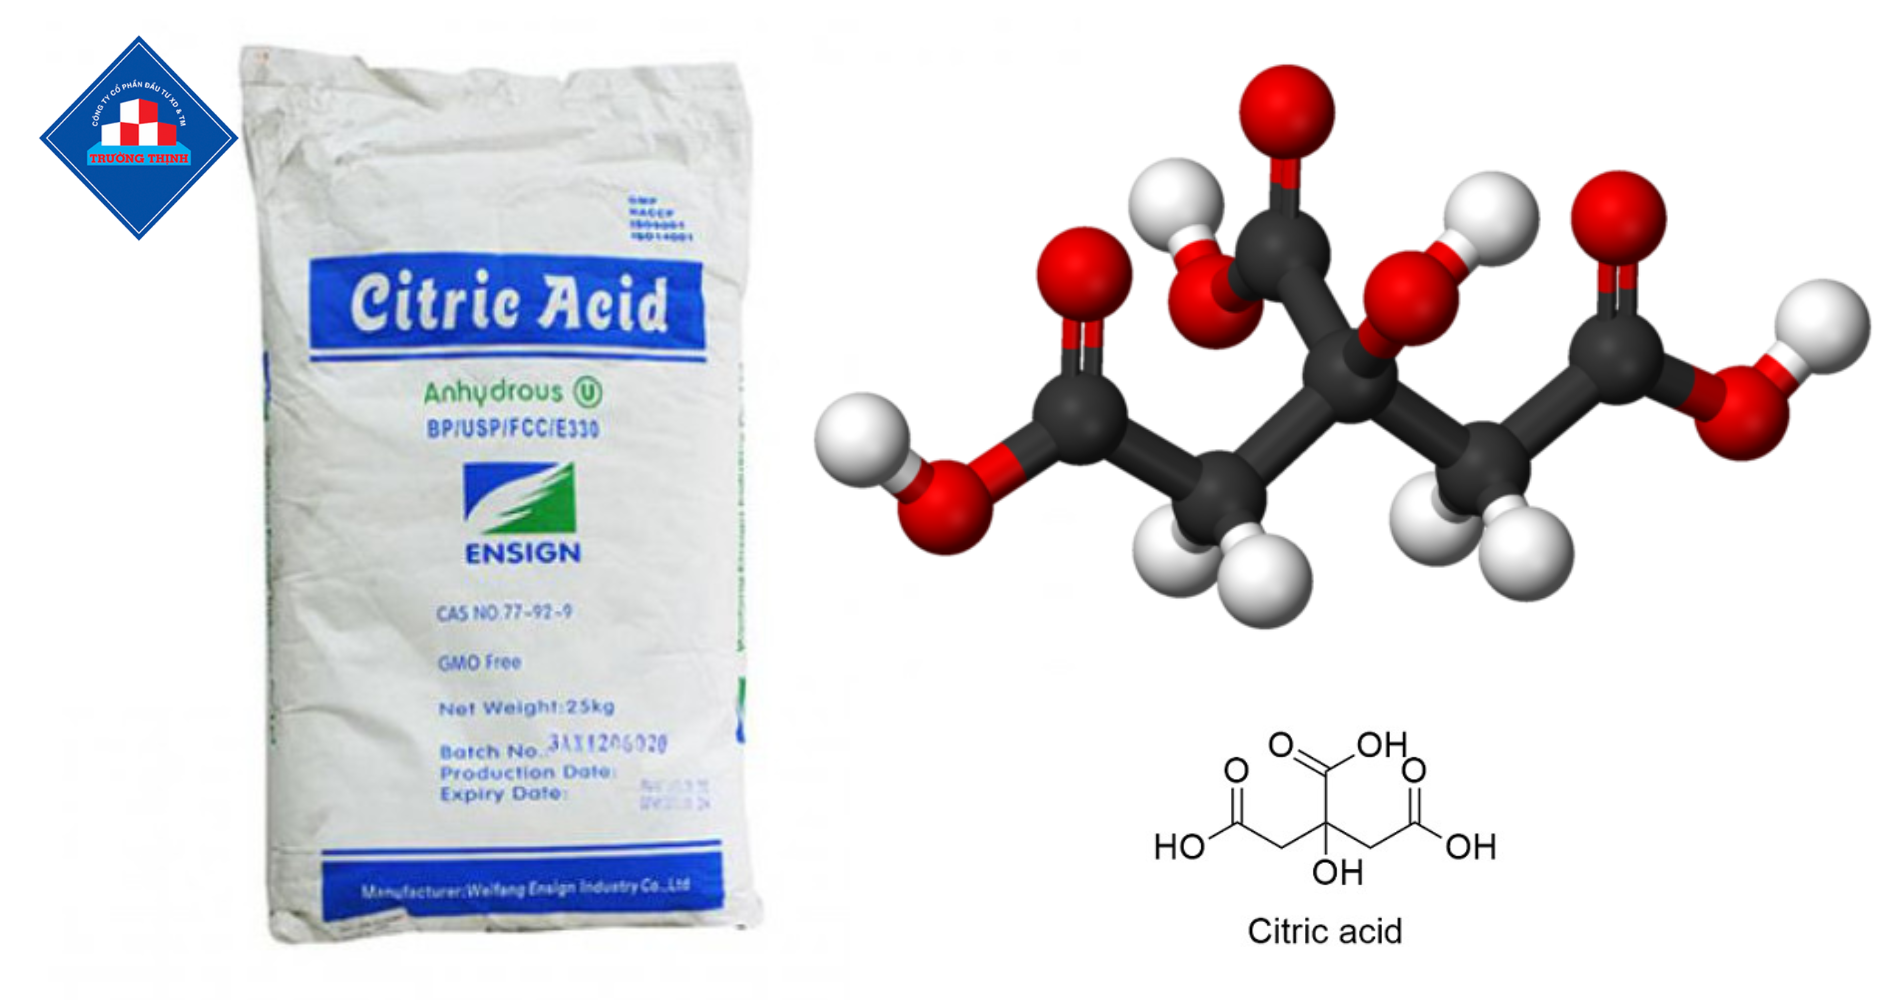 Citric Acid: Hợp Chất Quan Trọng Trong Thực Phẩm và Công Nghiệp